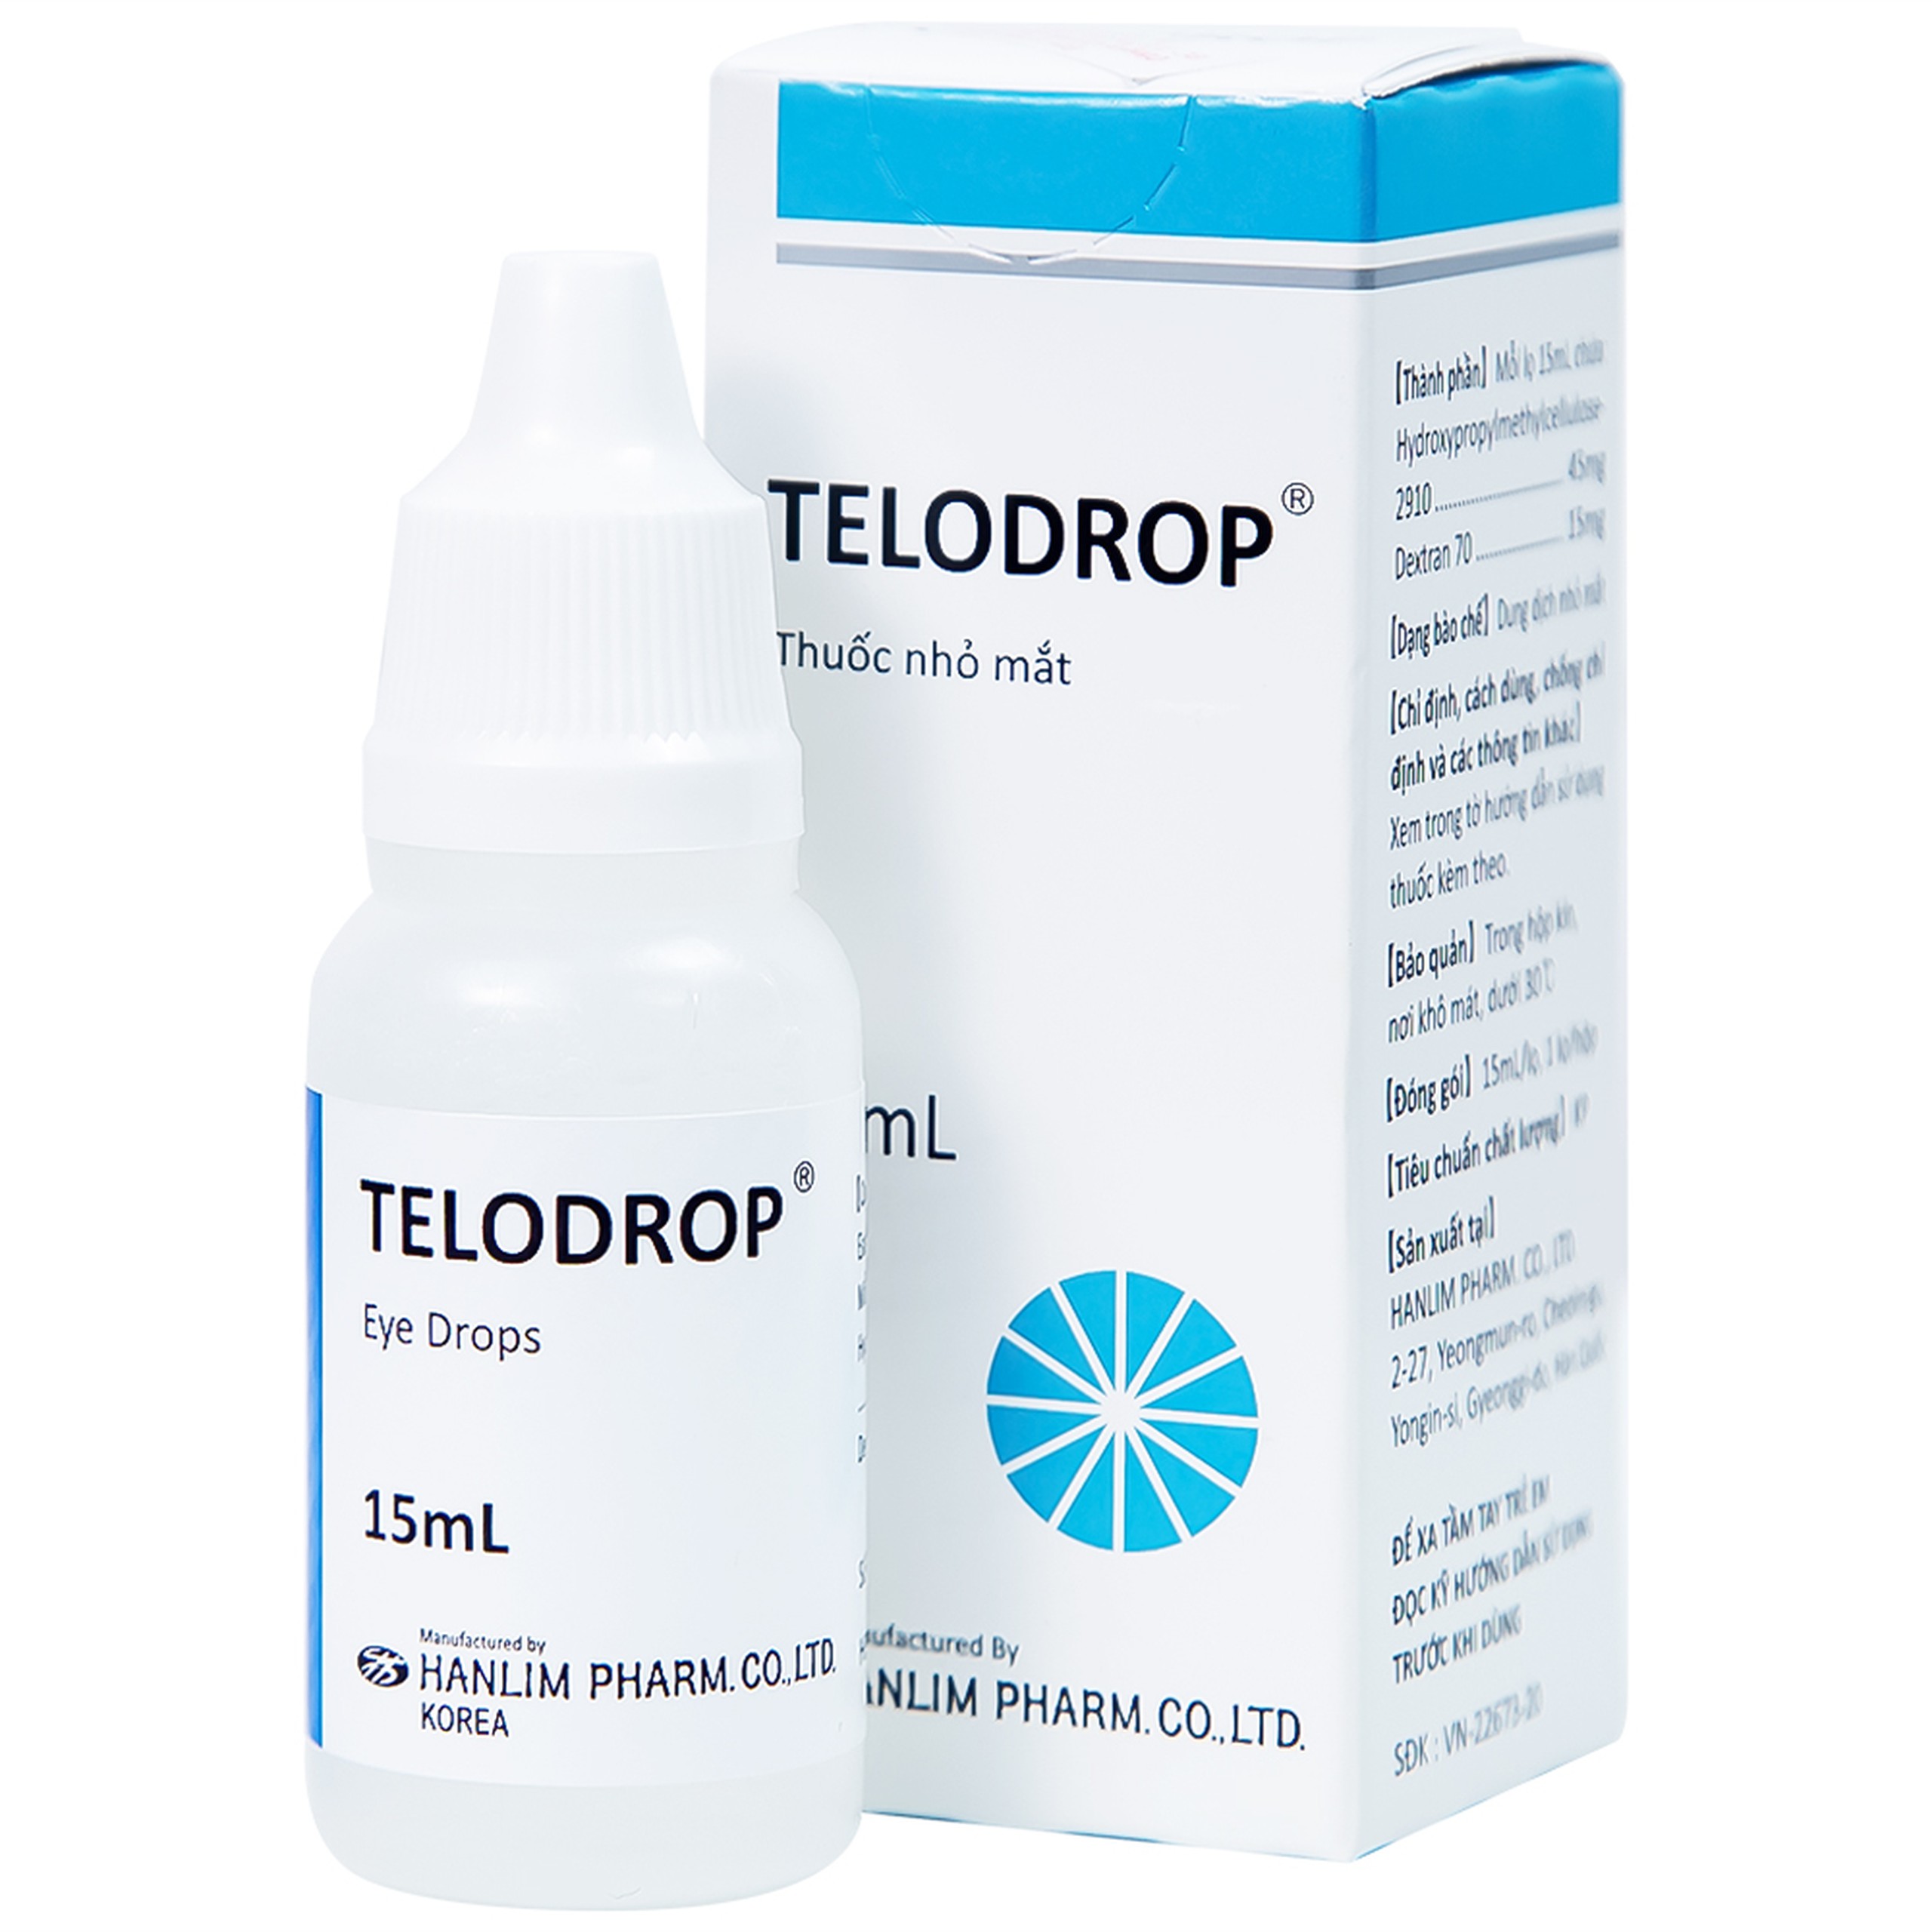 Thuốc nhỏ mắt Telodrop Hanlim điều trị chứng khô mắt (15ml)